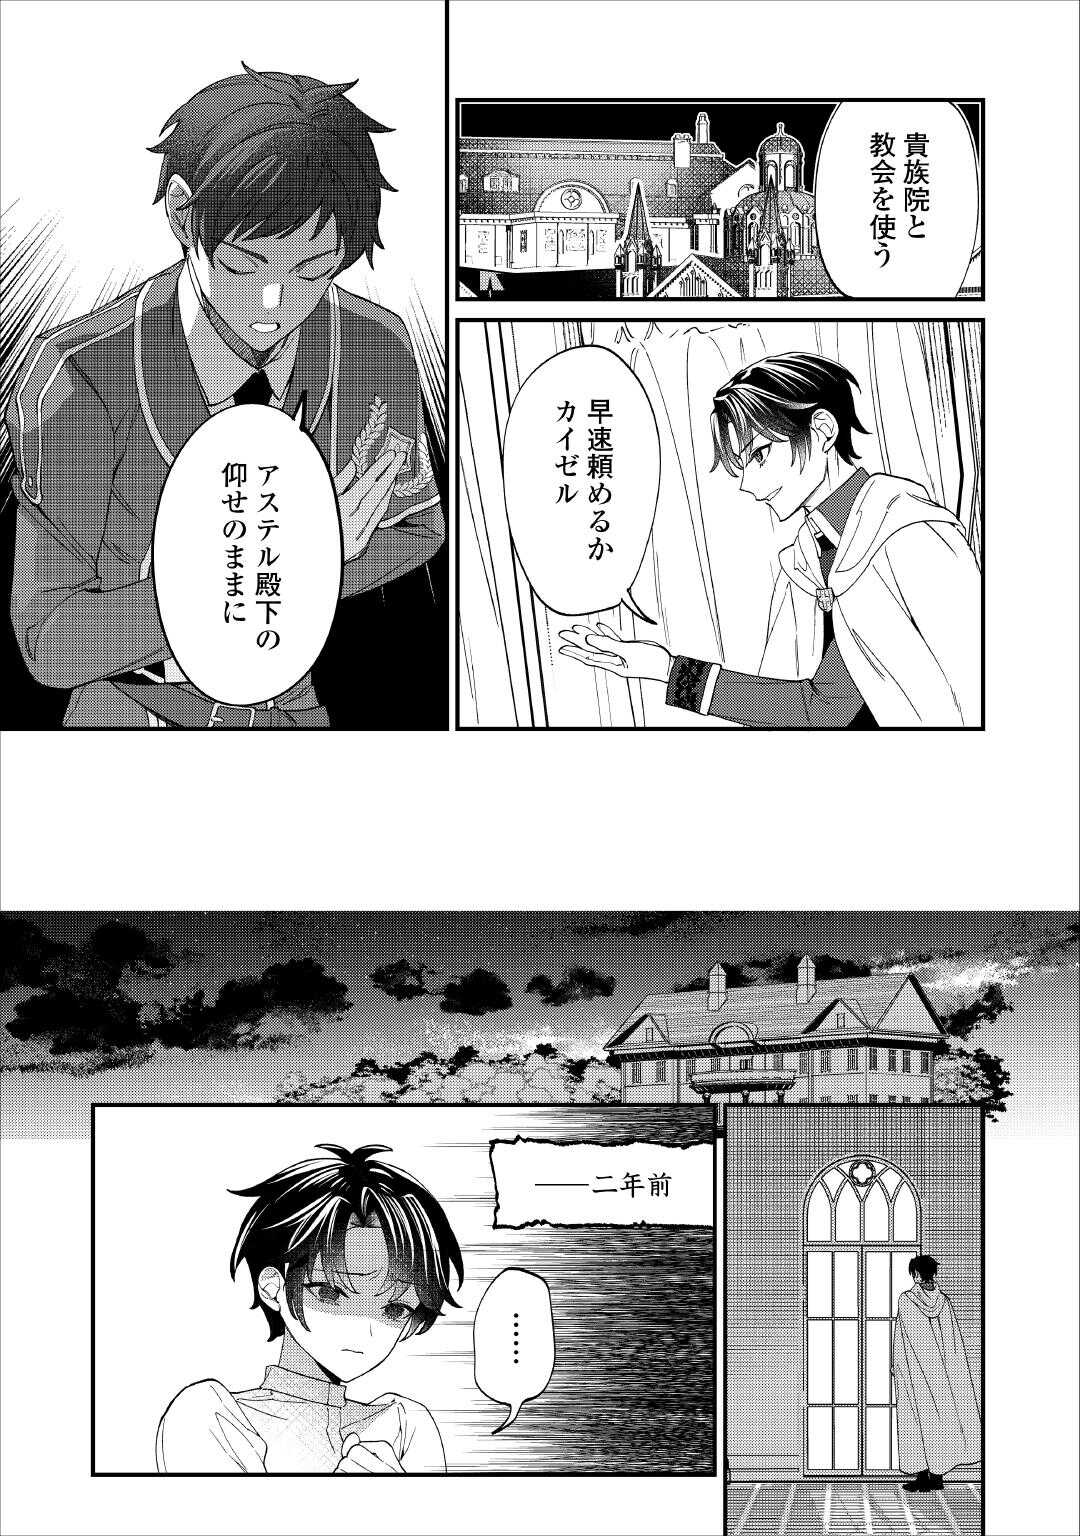 Watashi ga Shinde Manzoku desu ka? - Chapter 6 - Page 2